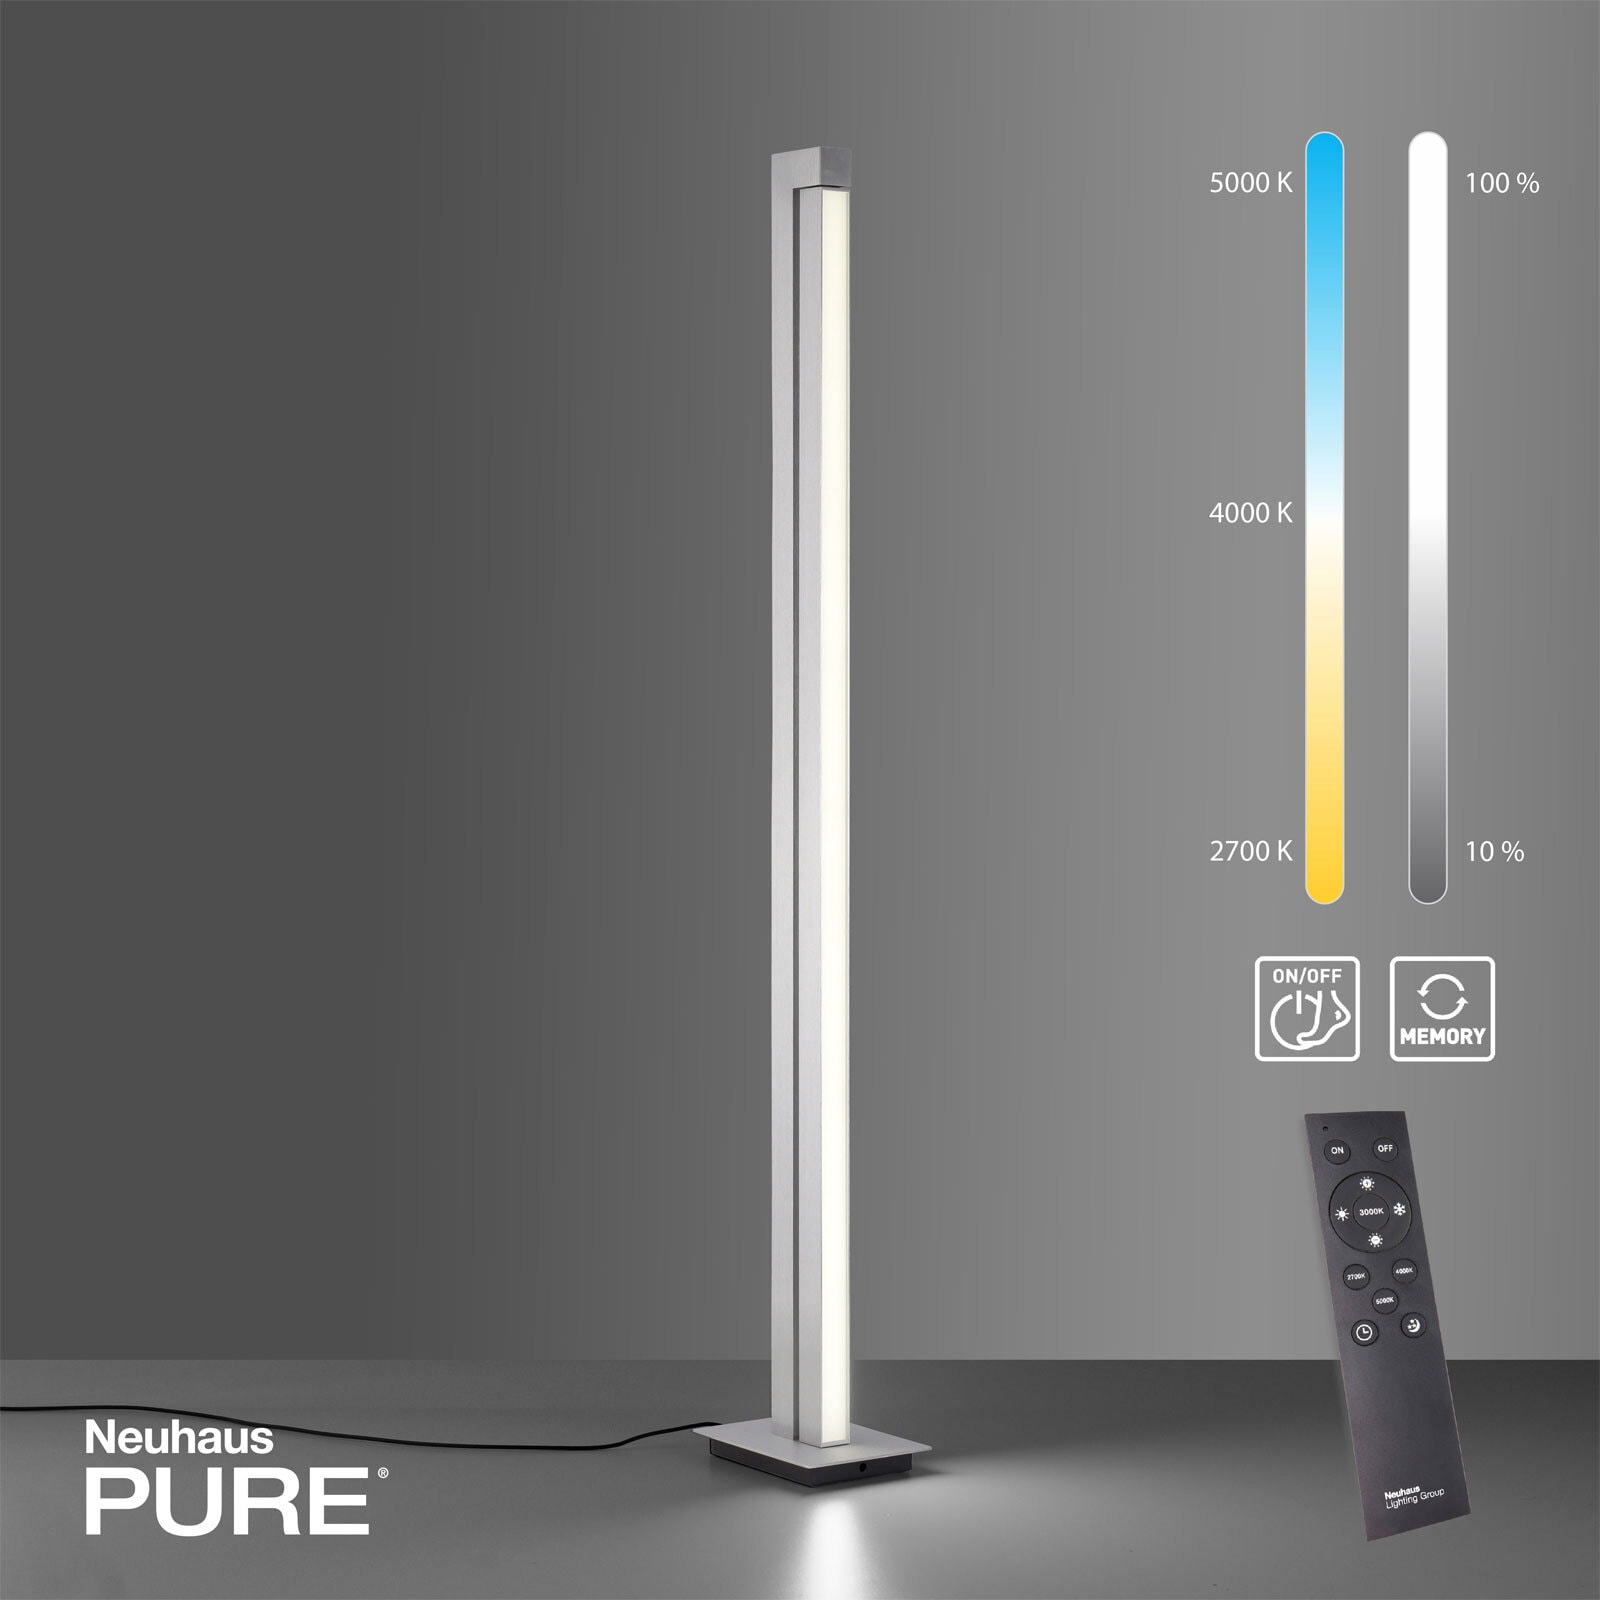 Paul Neuhaus LED Stehlampe PURE-LINES alufarbig